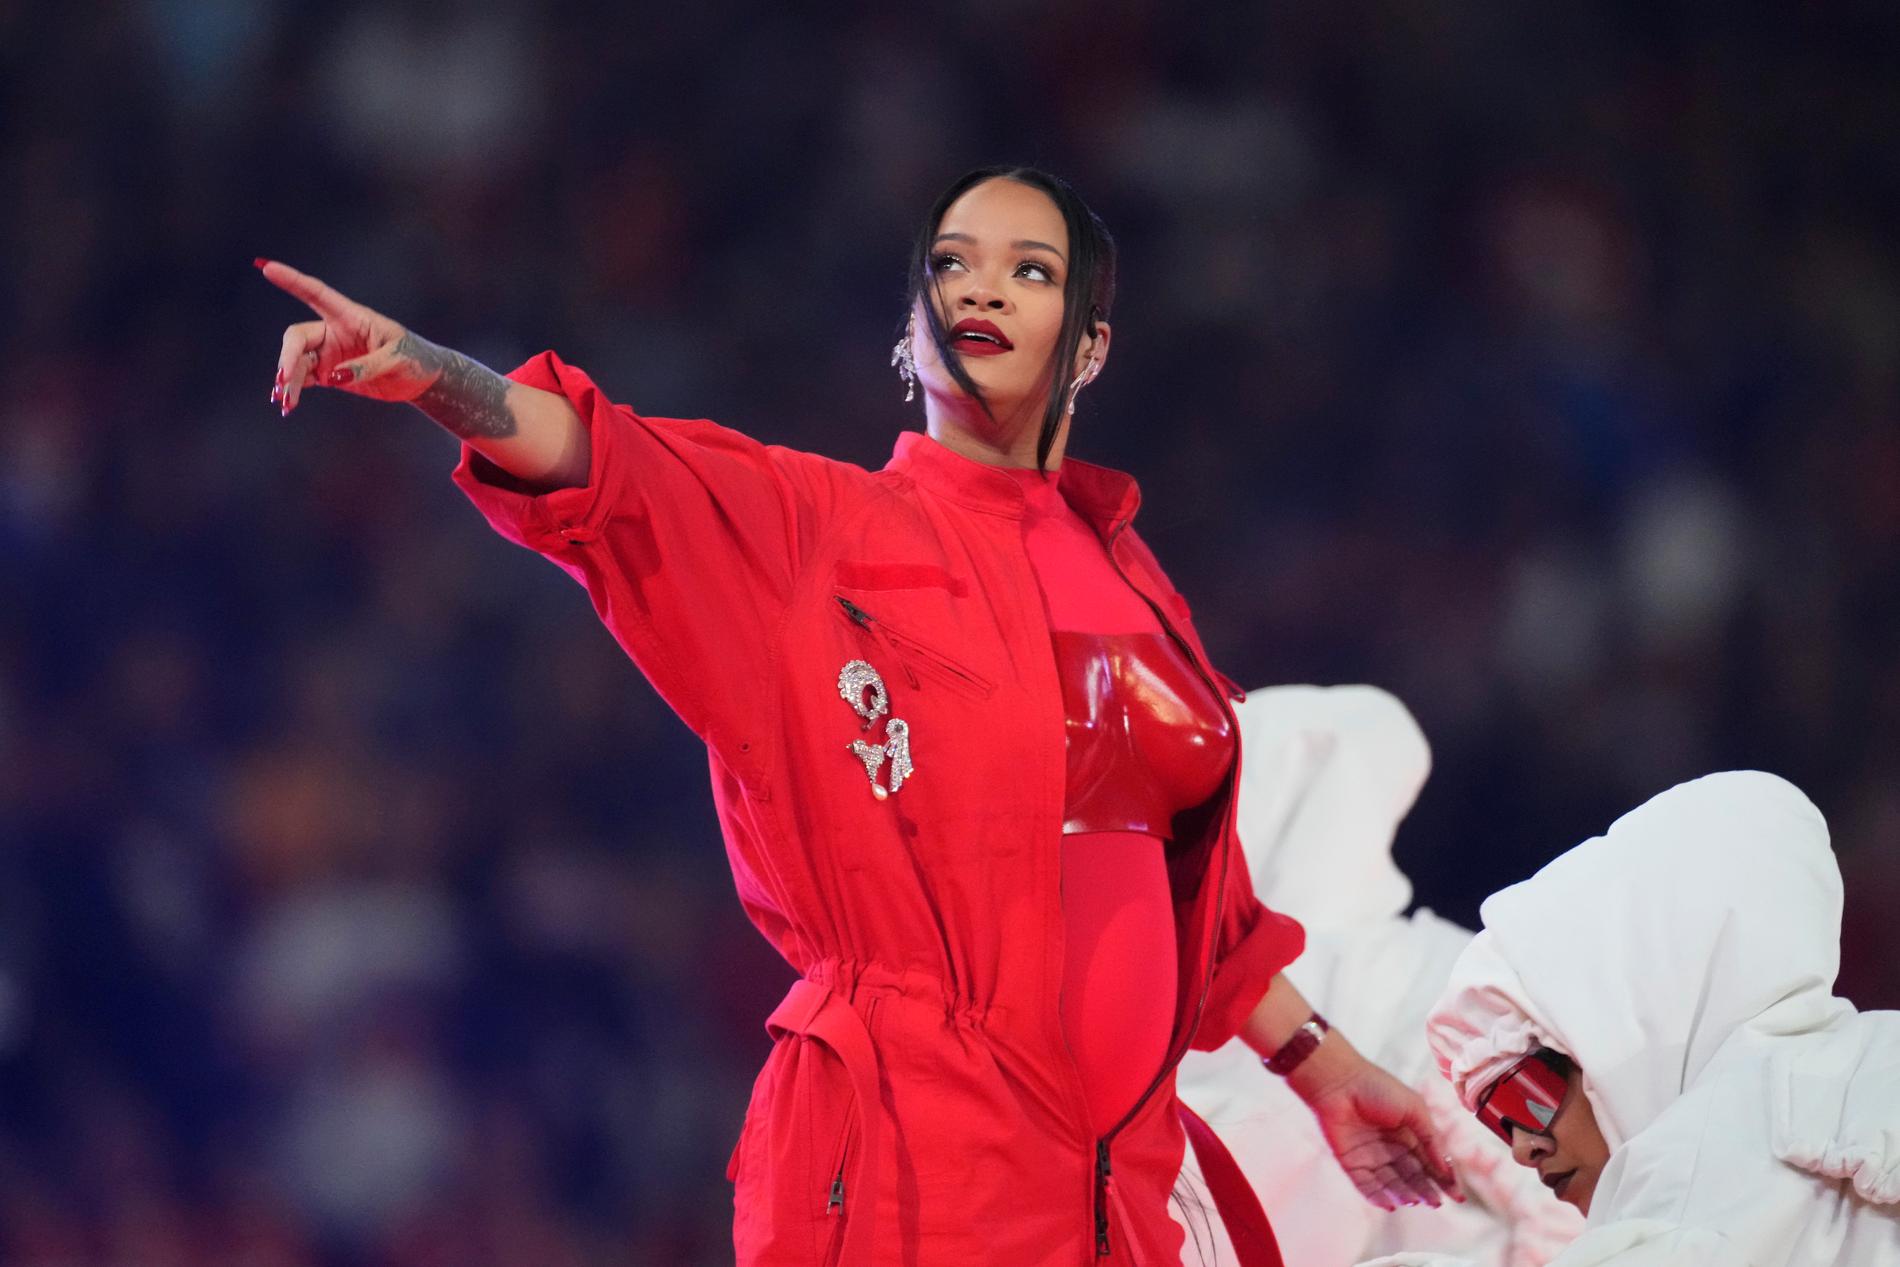 Gravida Rihanna under halvtidsshowen på Super Bowl-finalen den 12 februari. Nu väntar nytt framträdande på Oscarsgalan.